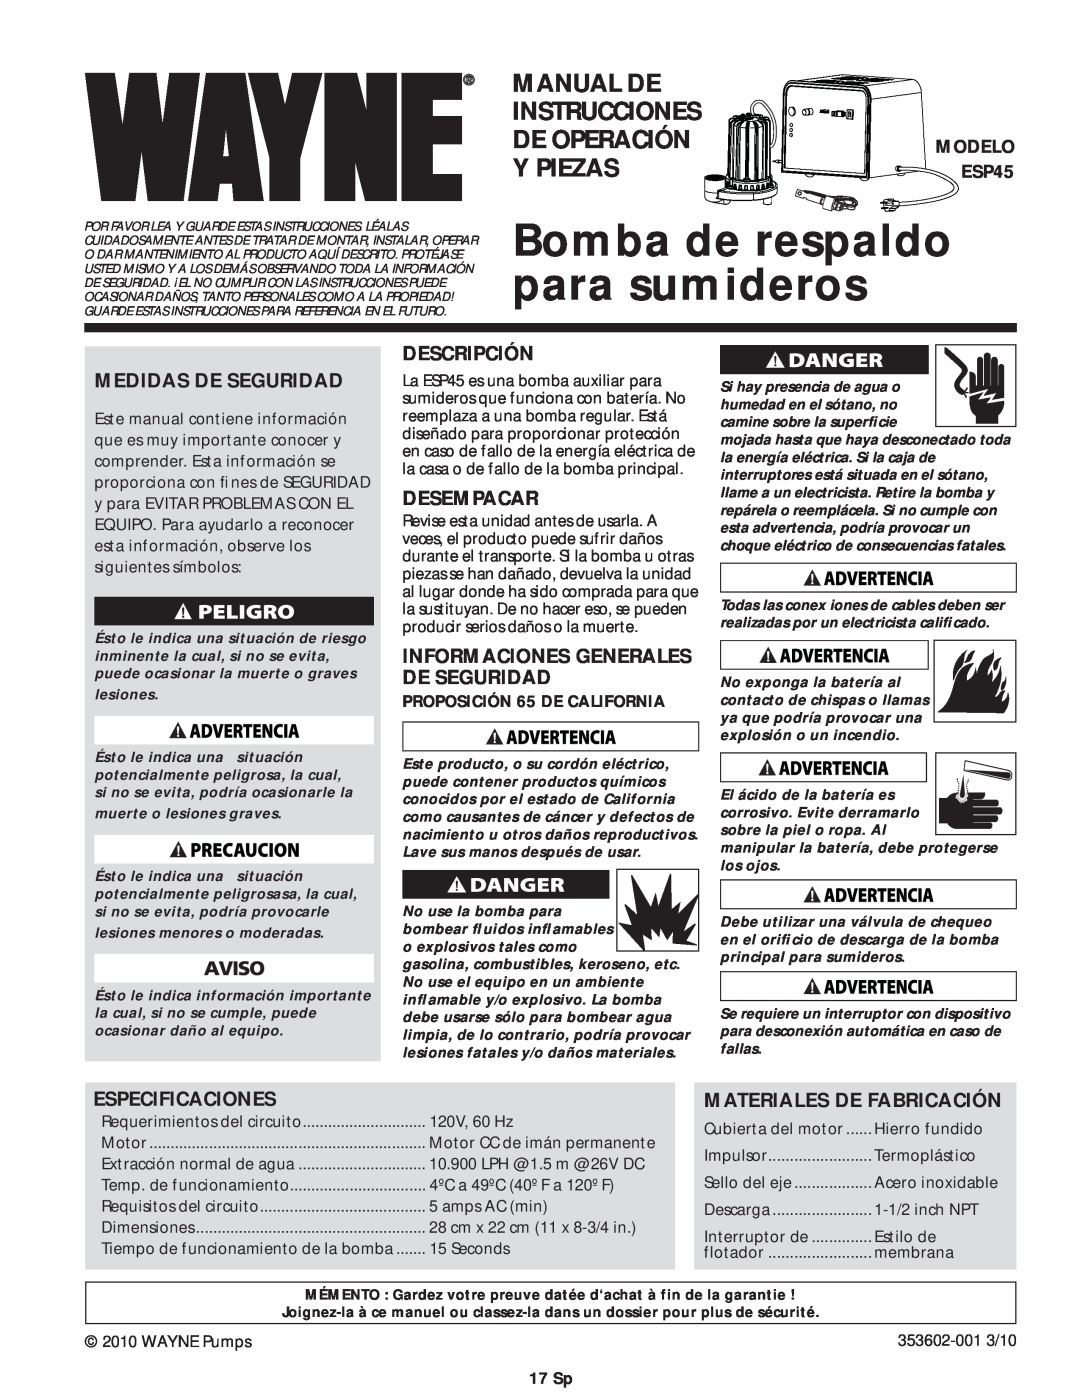 Wayne ESP45 Bomba de respaldo para sumideros, Manual De, Instrucciones, De Operación, Y Piezas, Medidas De Seguridad 